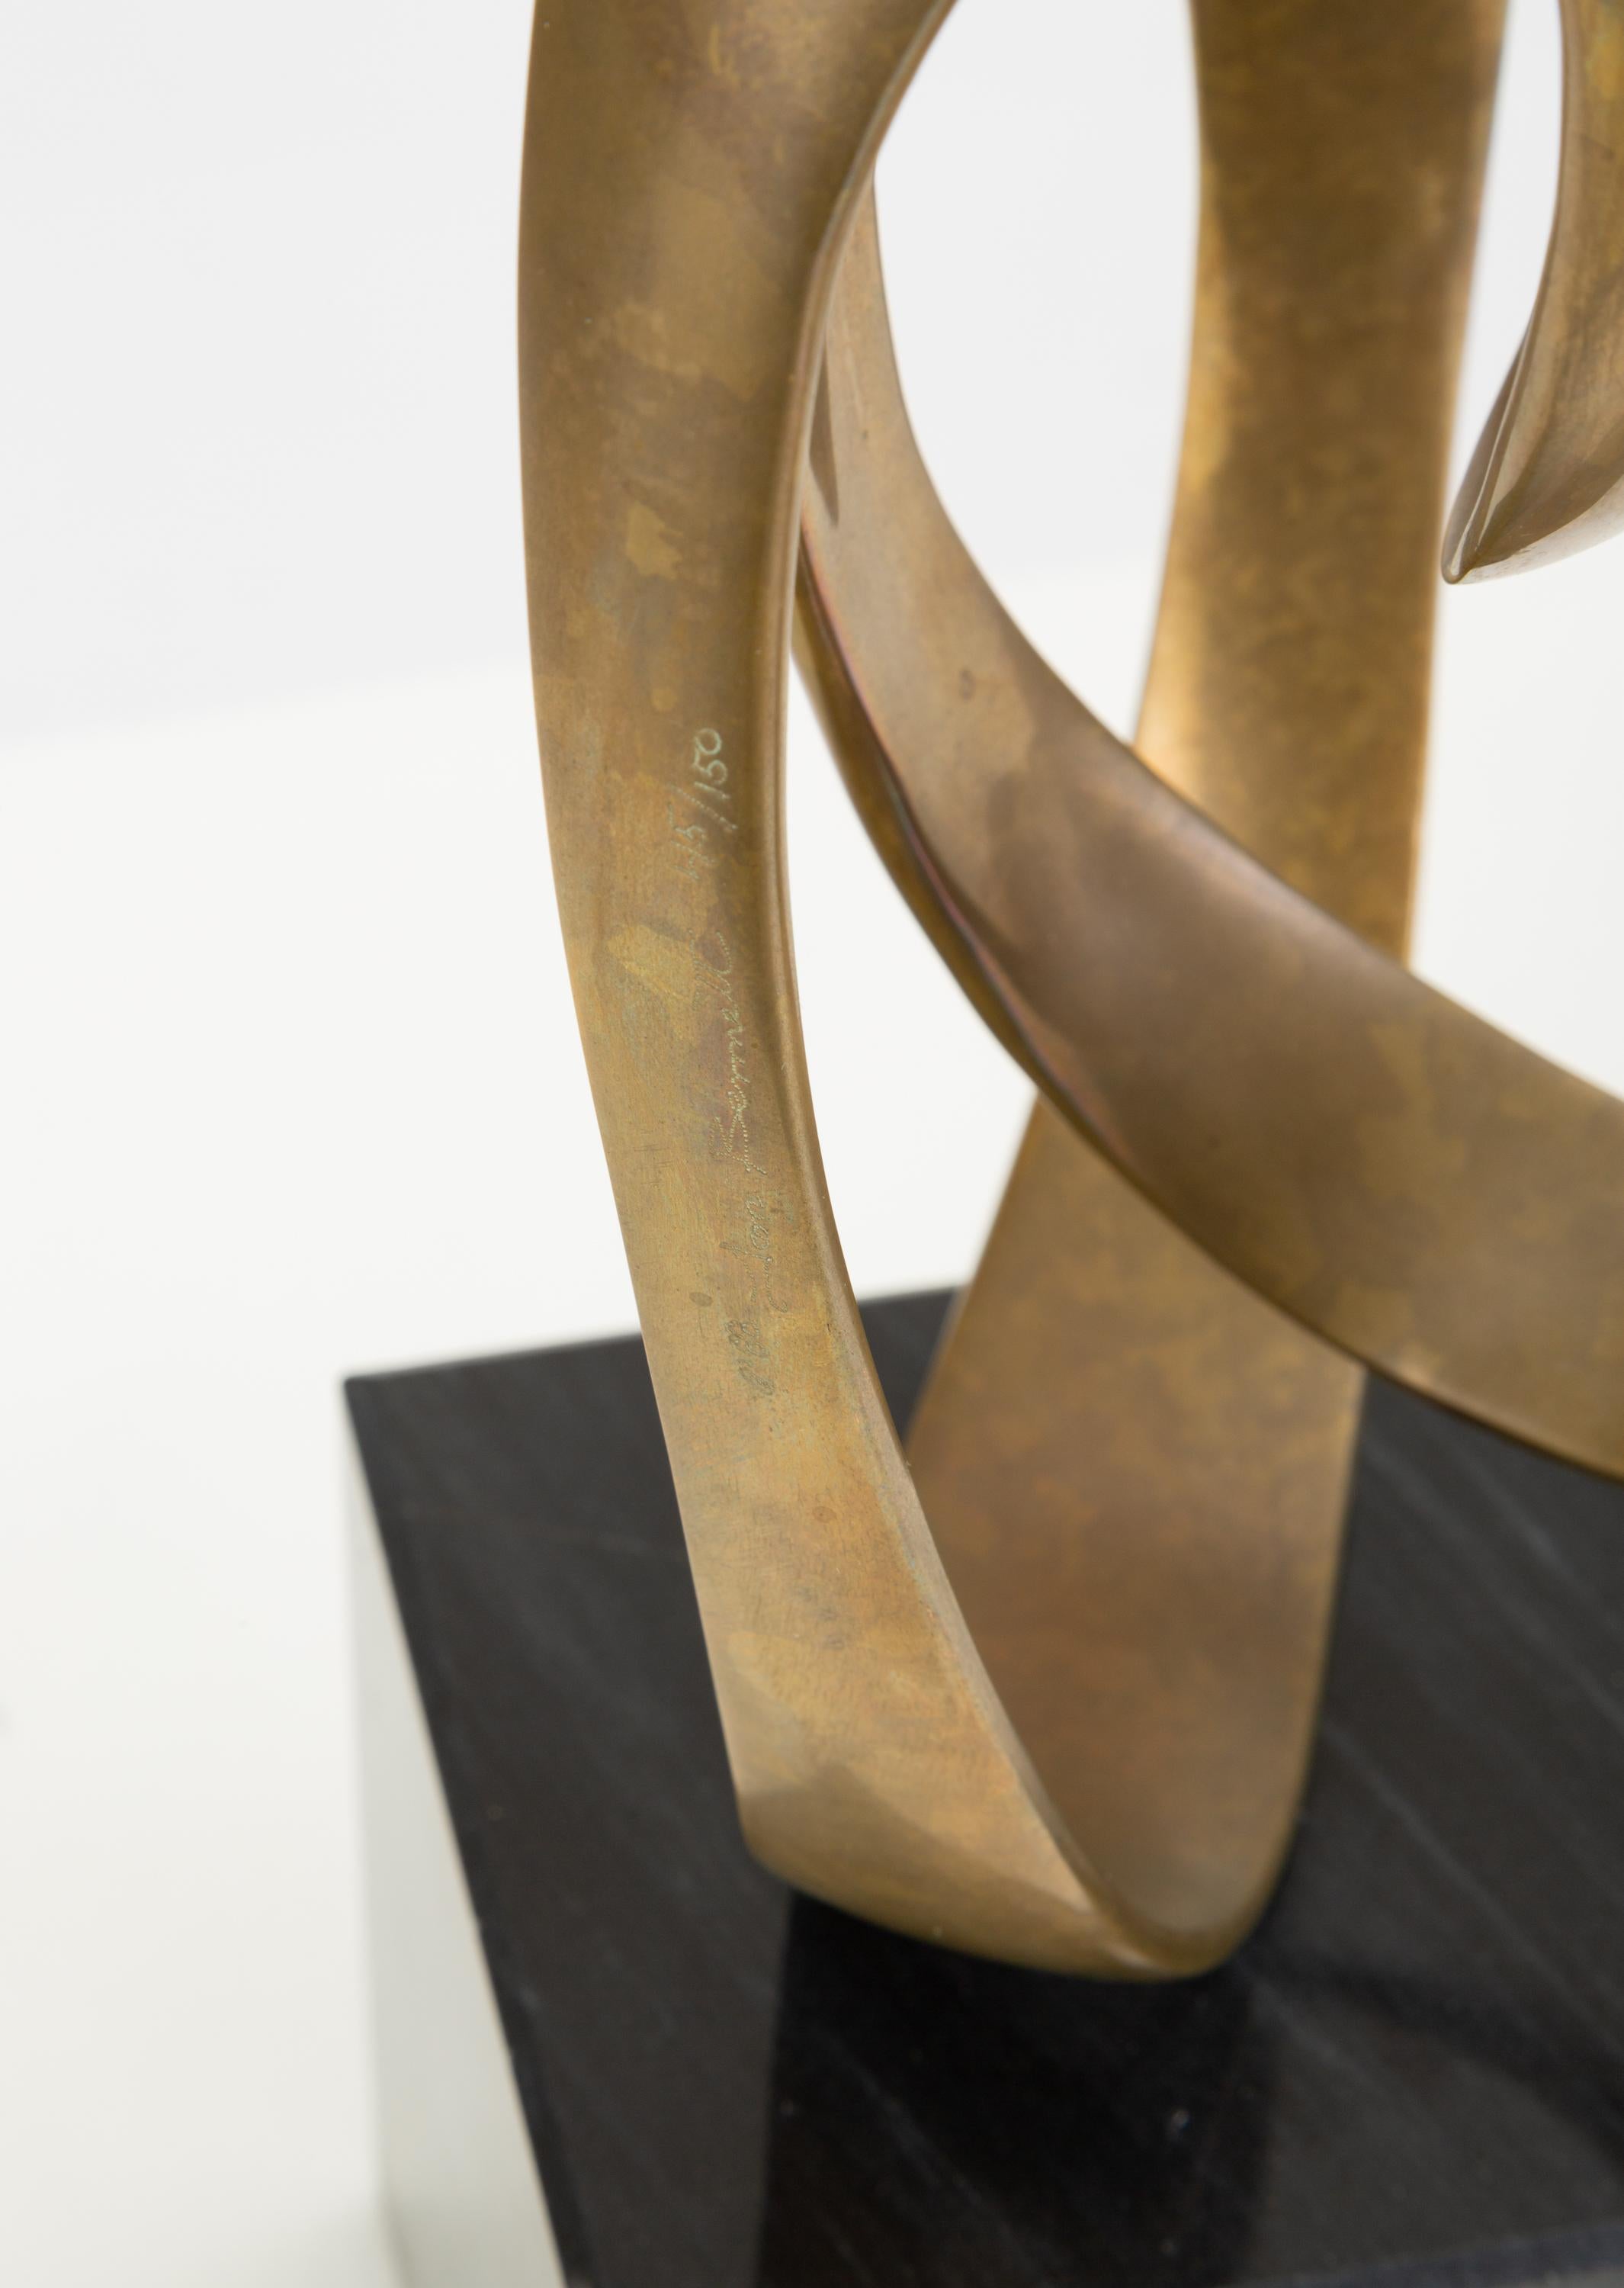 Abstract Bronze Sculpture by Tom Bennett 1